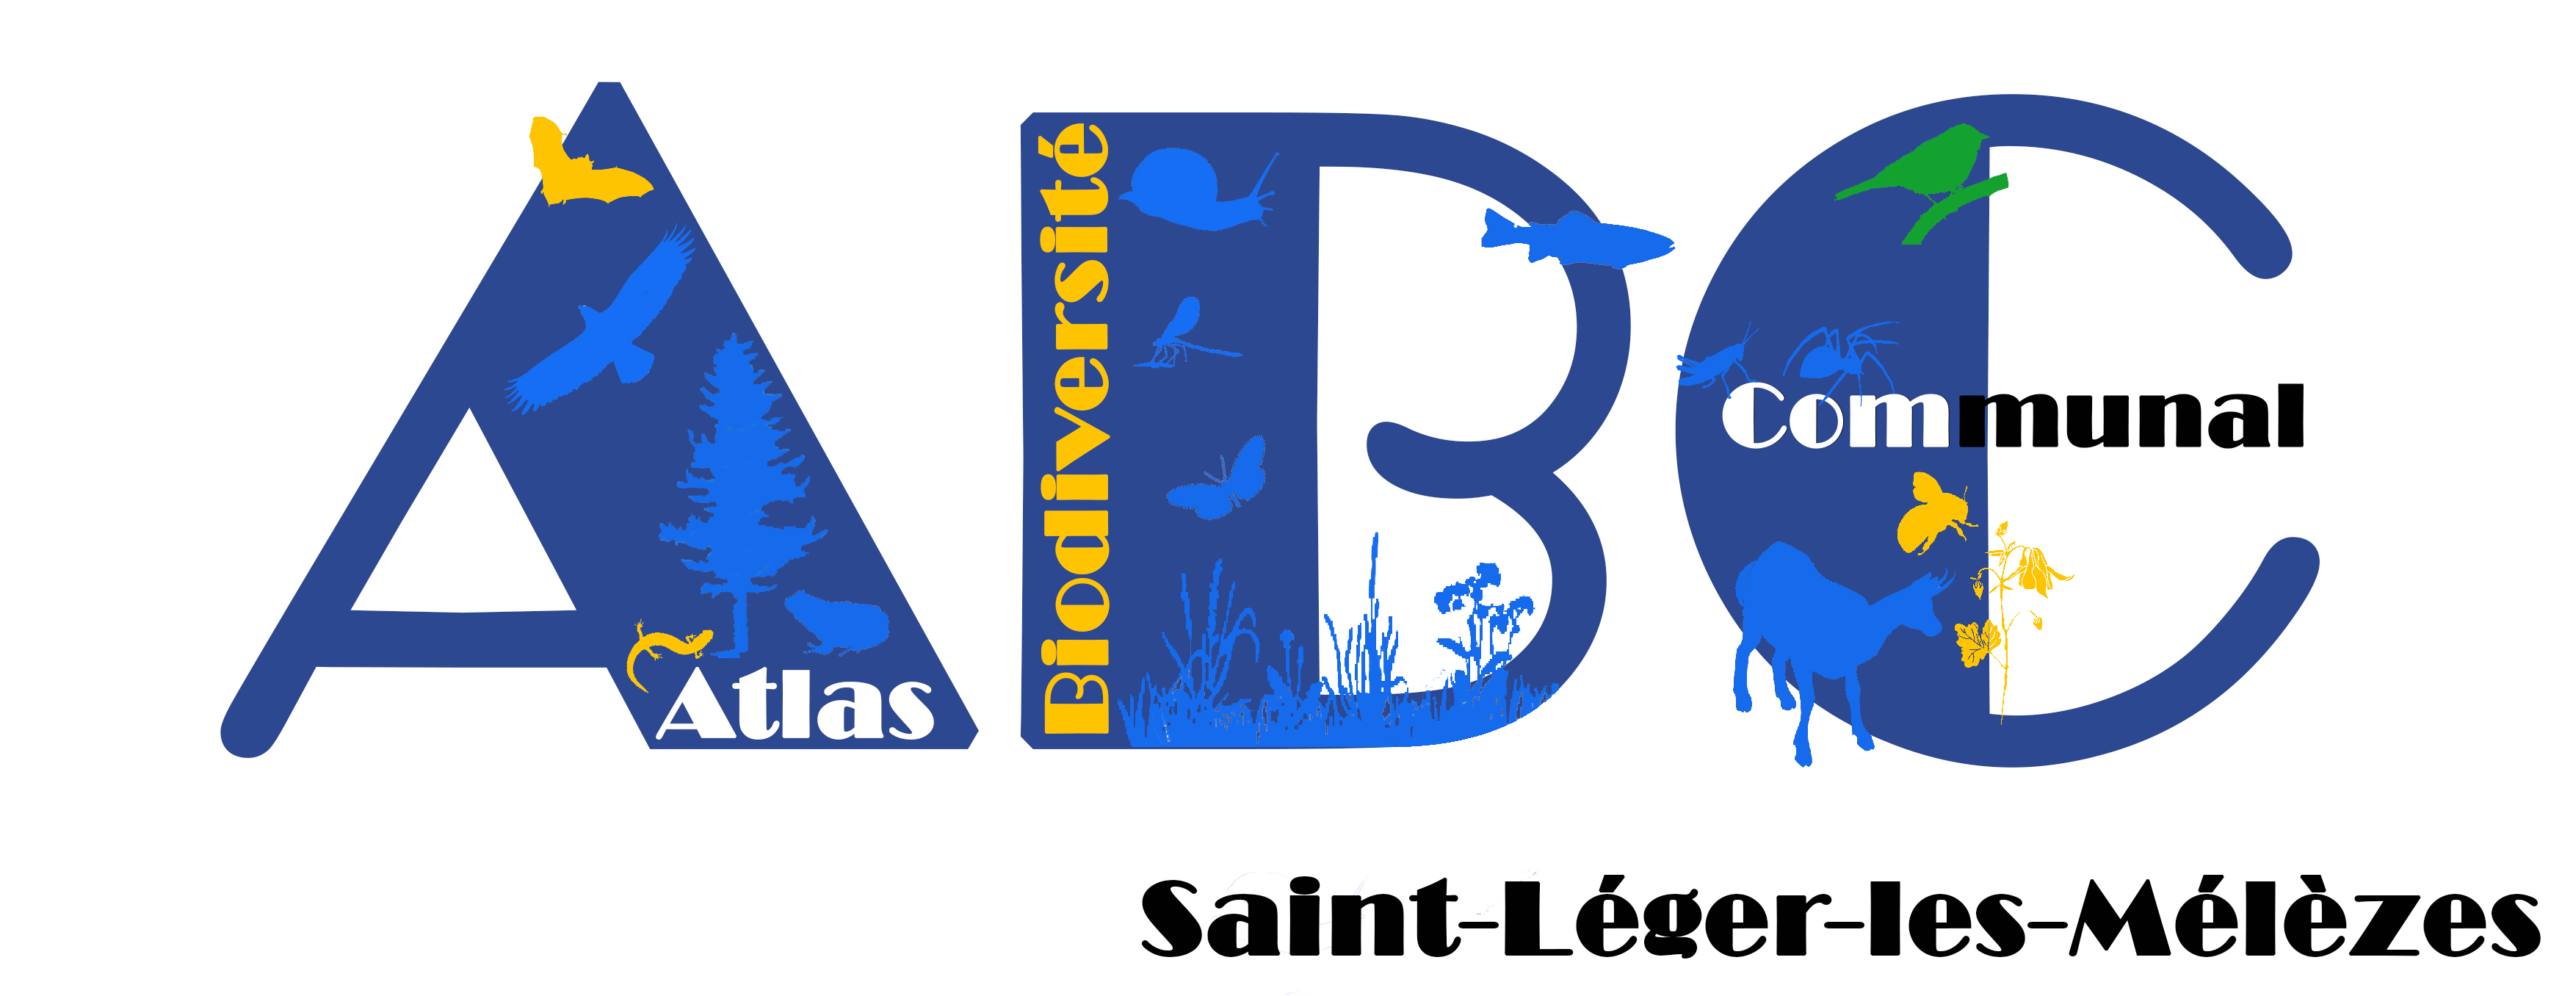 Opération escargots - ABC Saint-Léger-les-Mélèzes